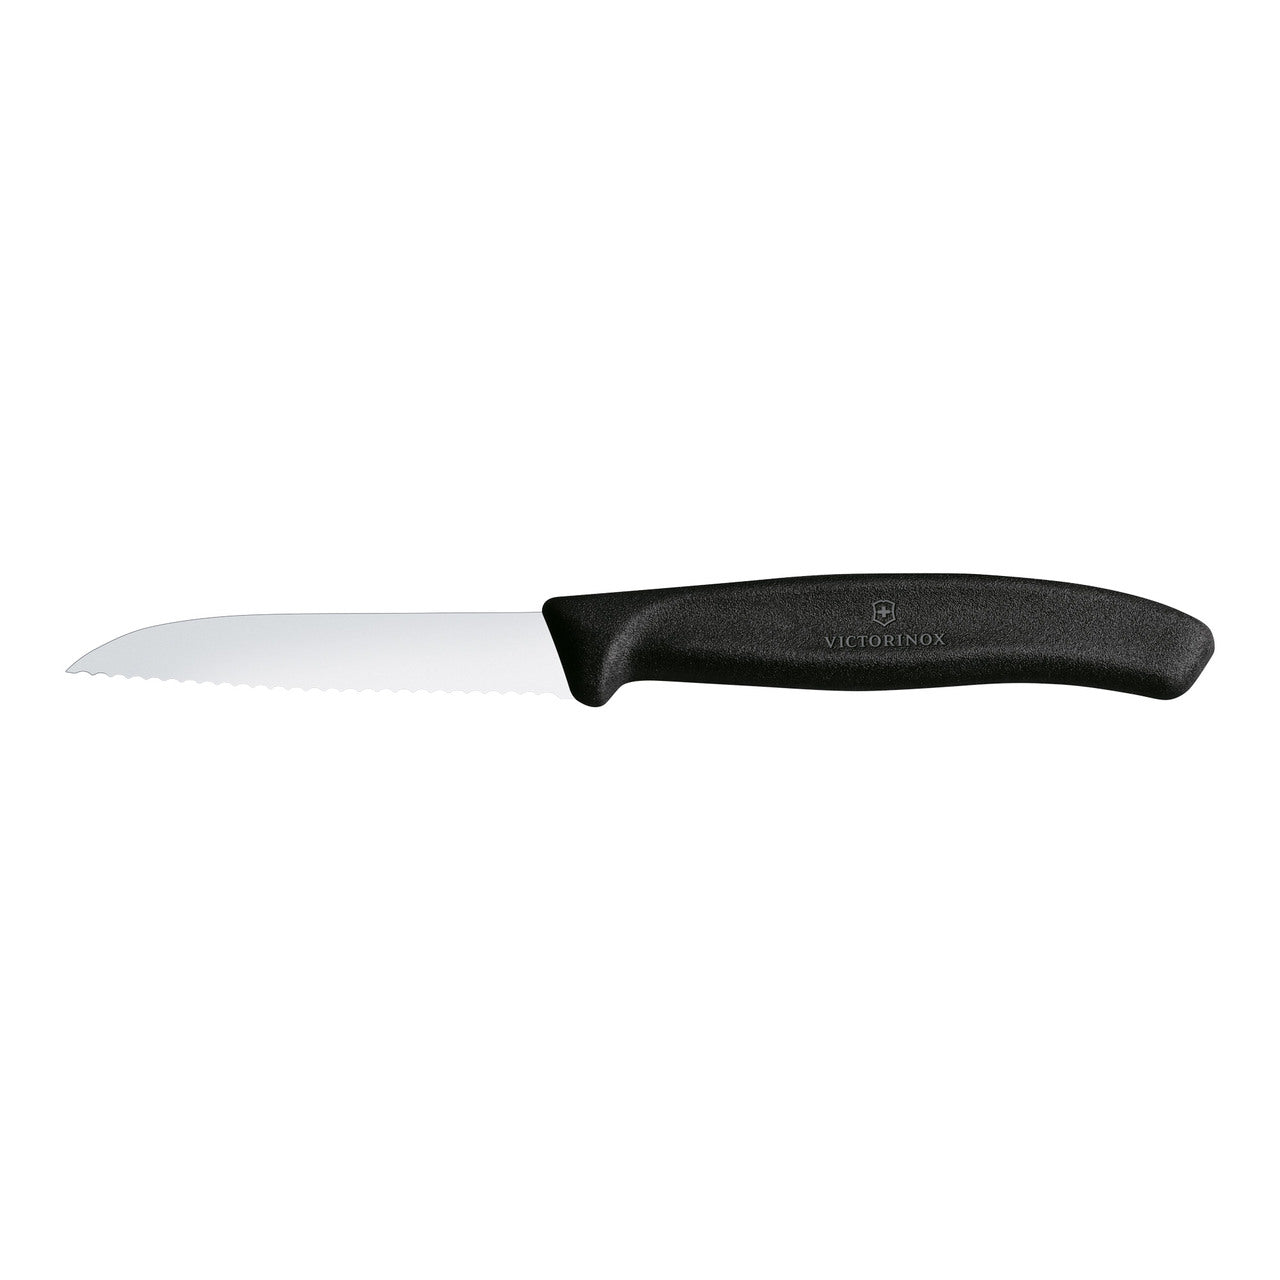 Vict - Paring Knife Drop Point, Wavy Edge -Black 8cm